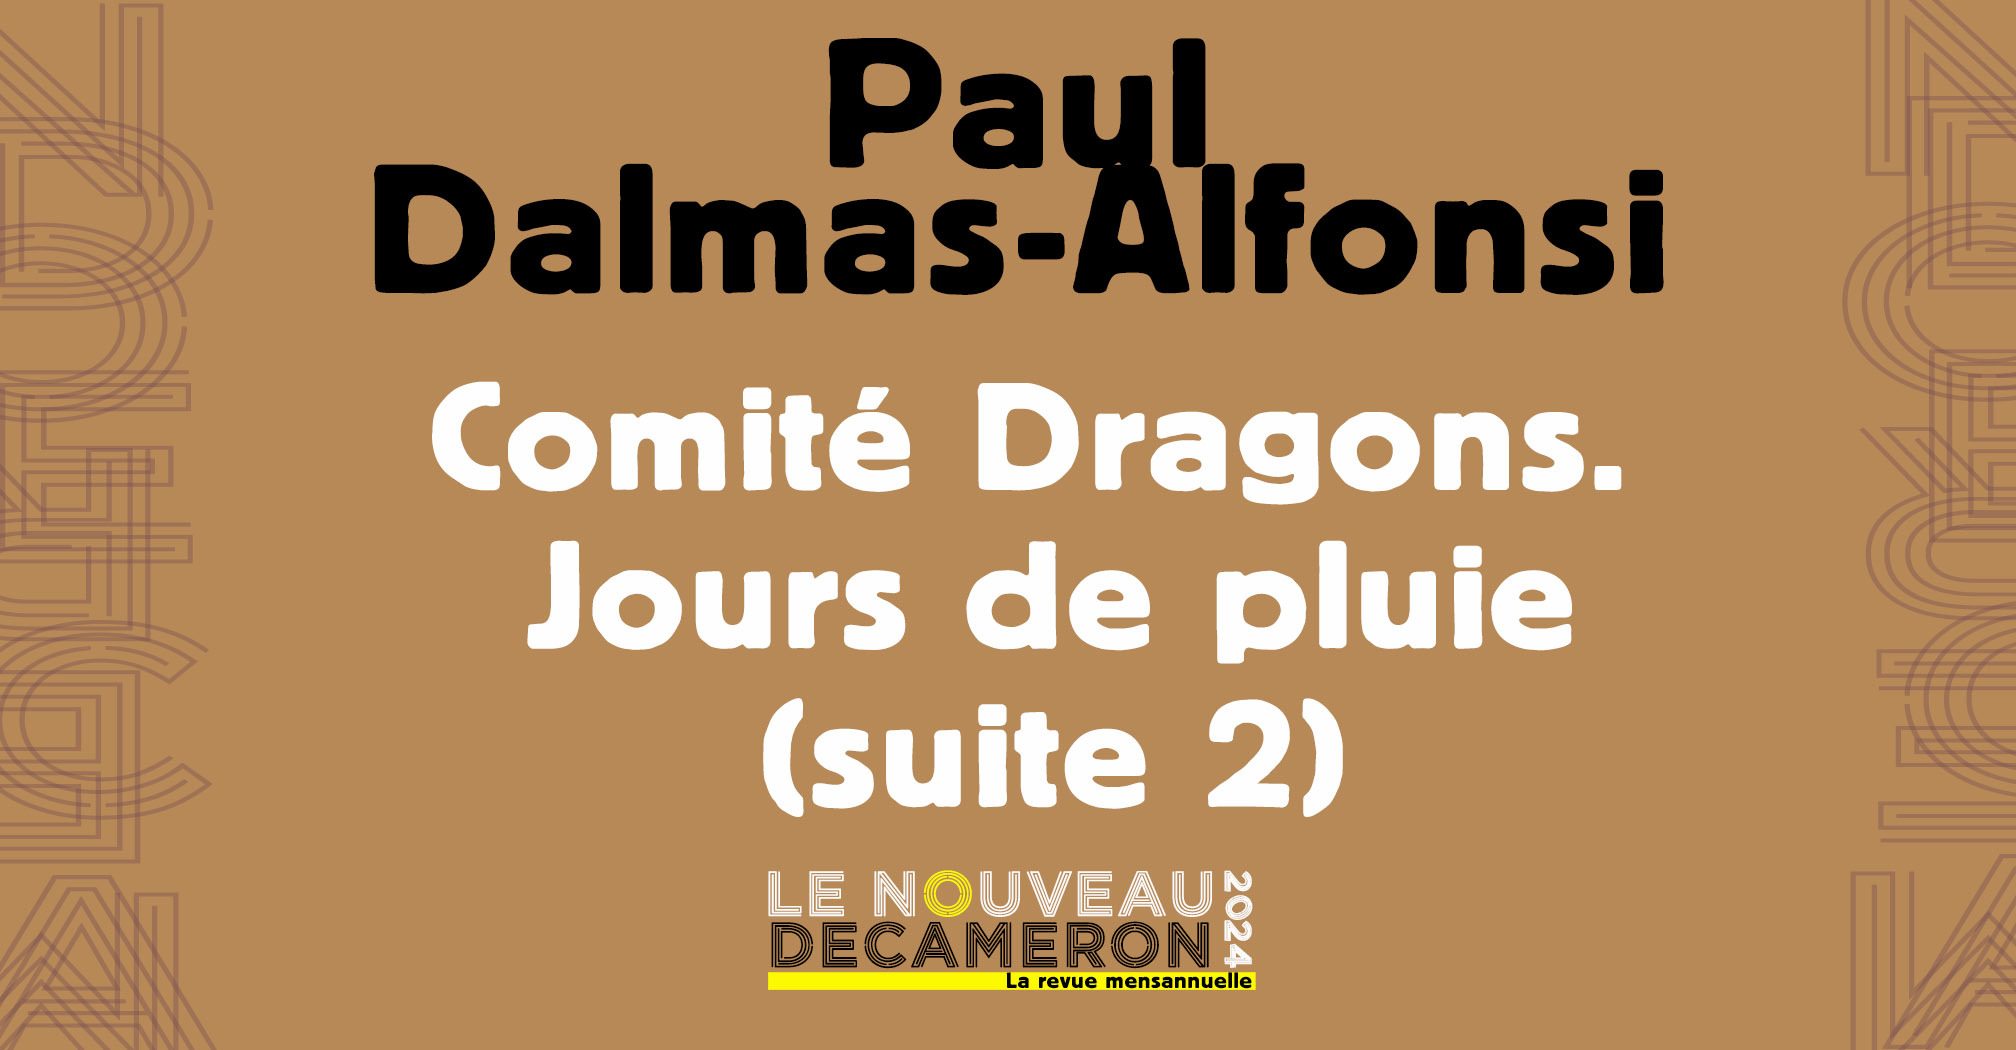 Paul Dalmas - Alfonsi - Comité Dragons. Jours de pluie (suite 2)